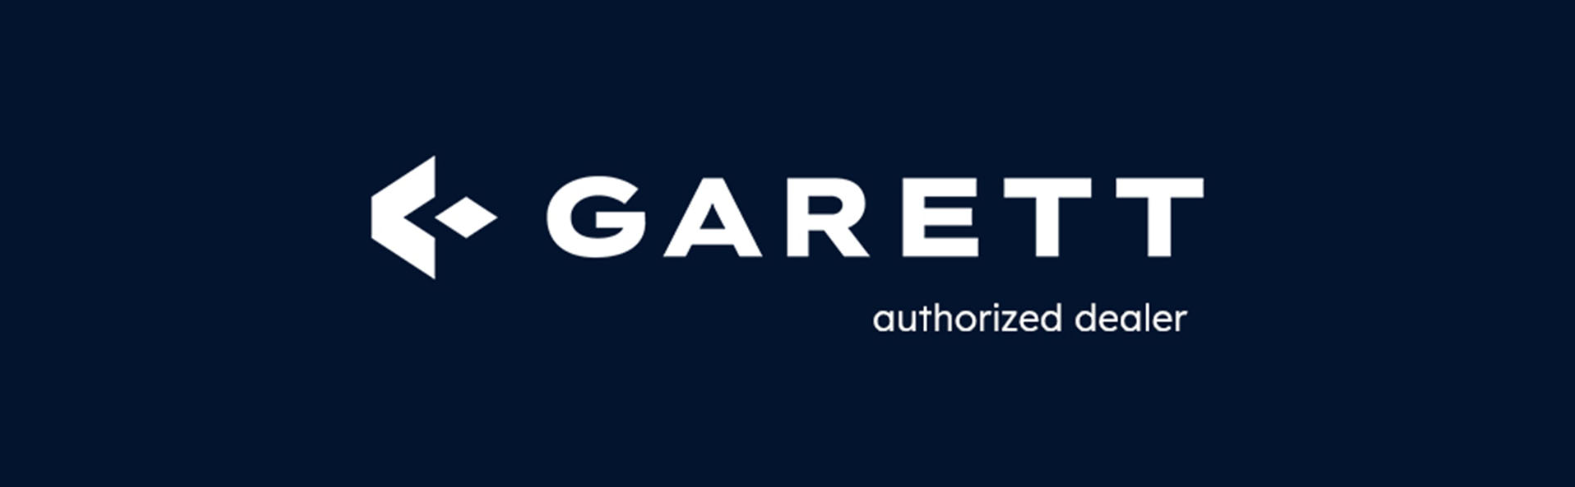 Garett GRC Activity 2 Gold matt Garett